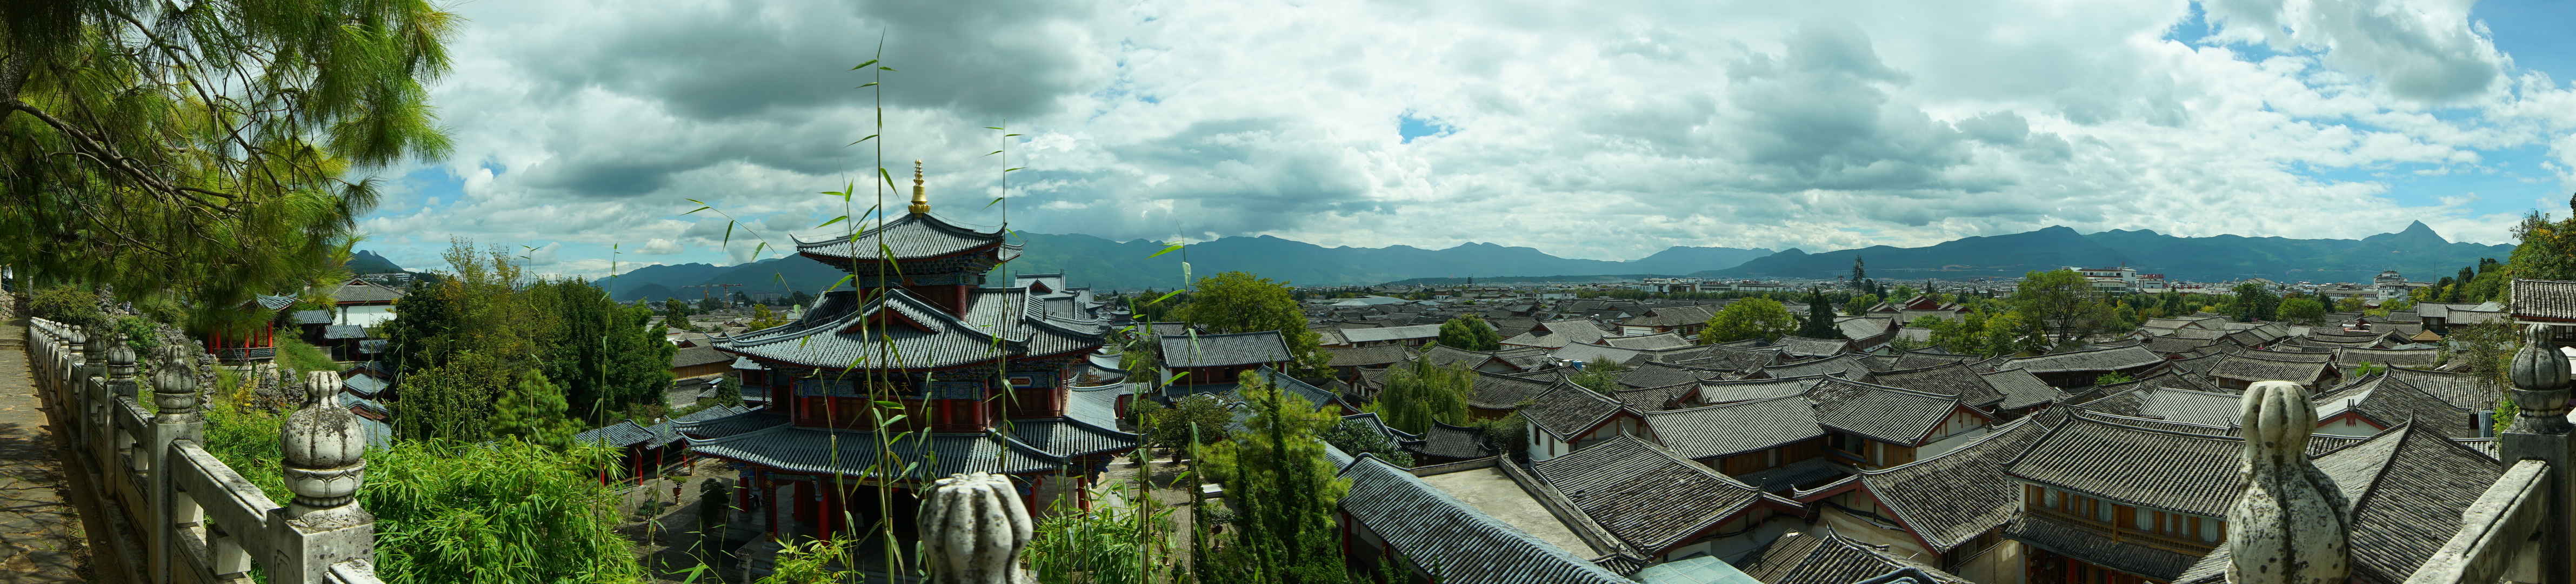 俯瞰丽江古城世界文化遗产壁纸